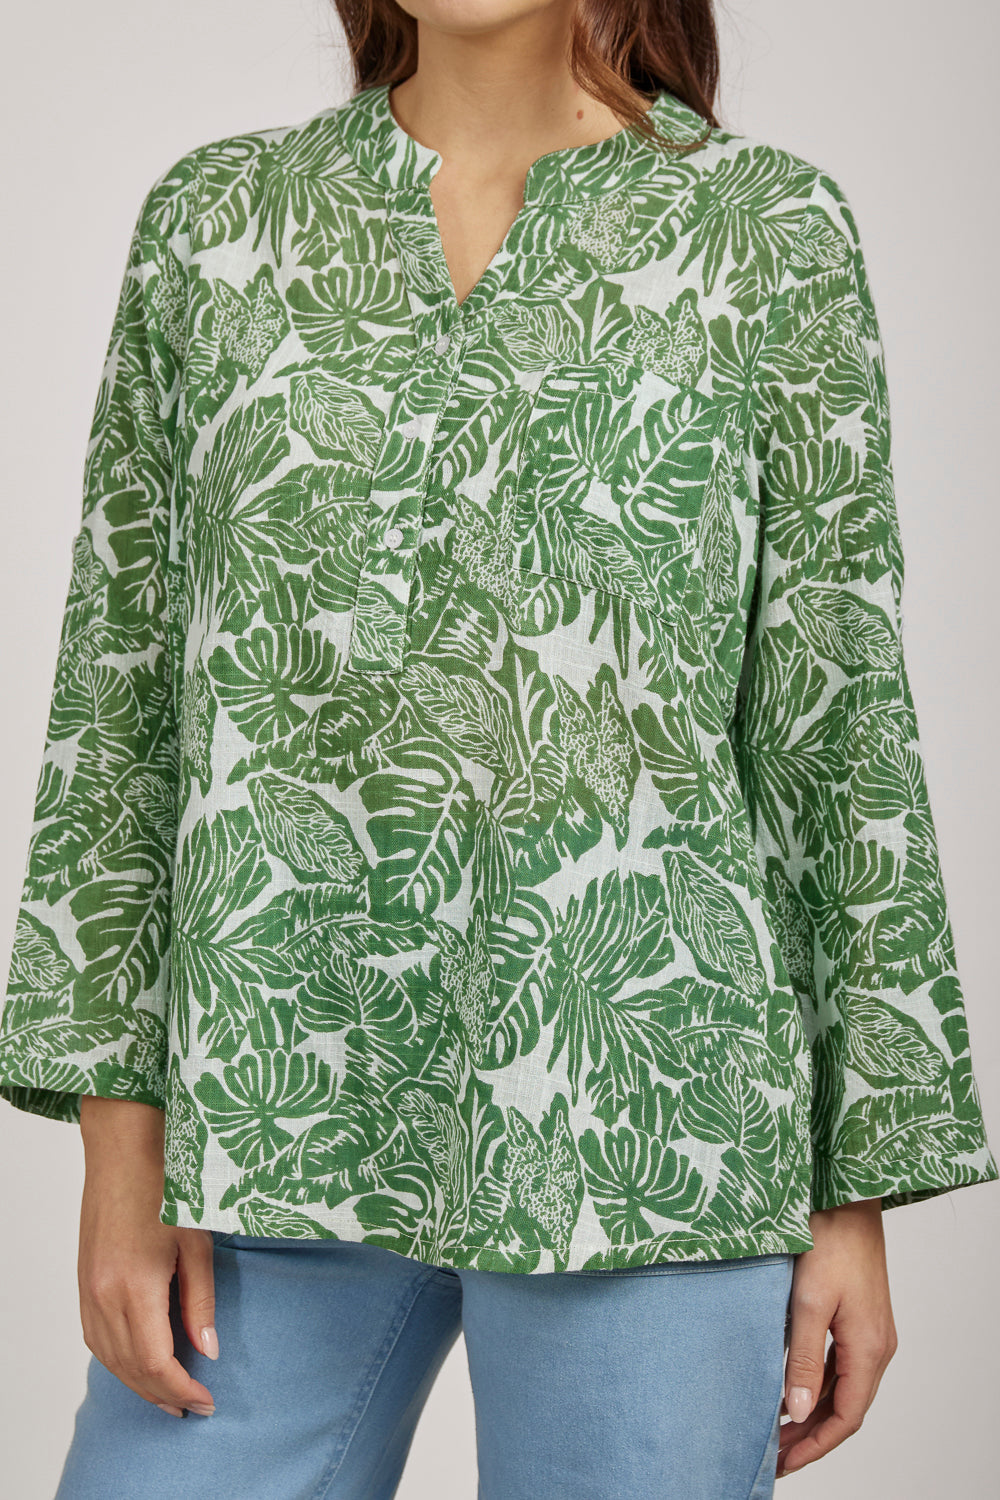 Cotton Slub Palm Leaves Print Shirt